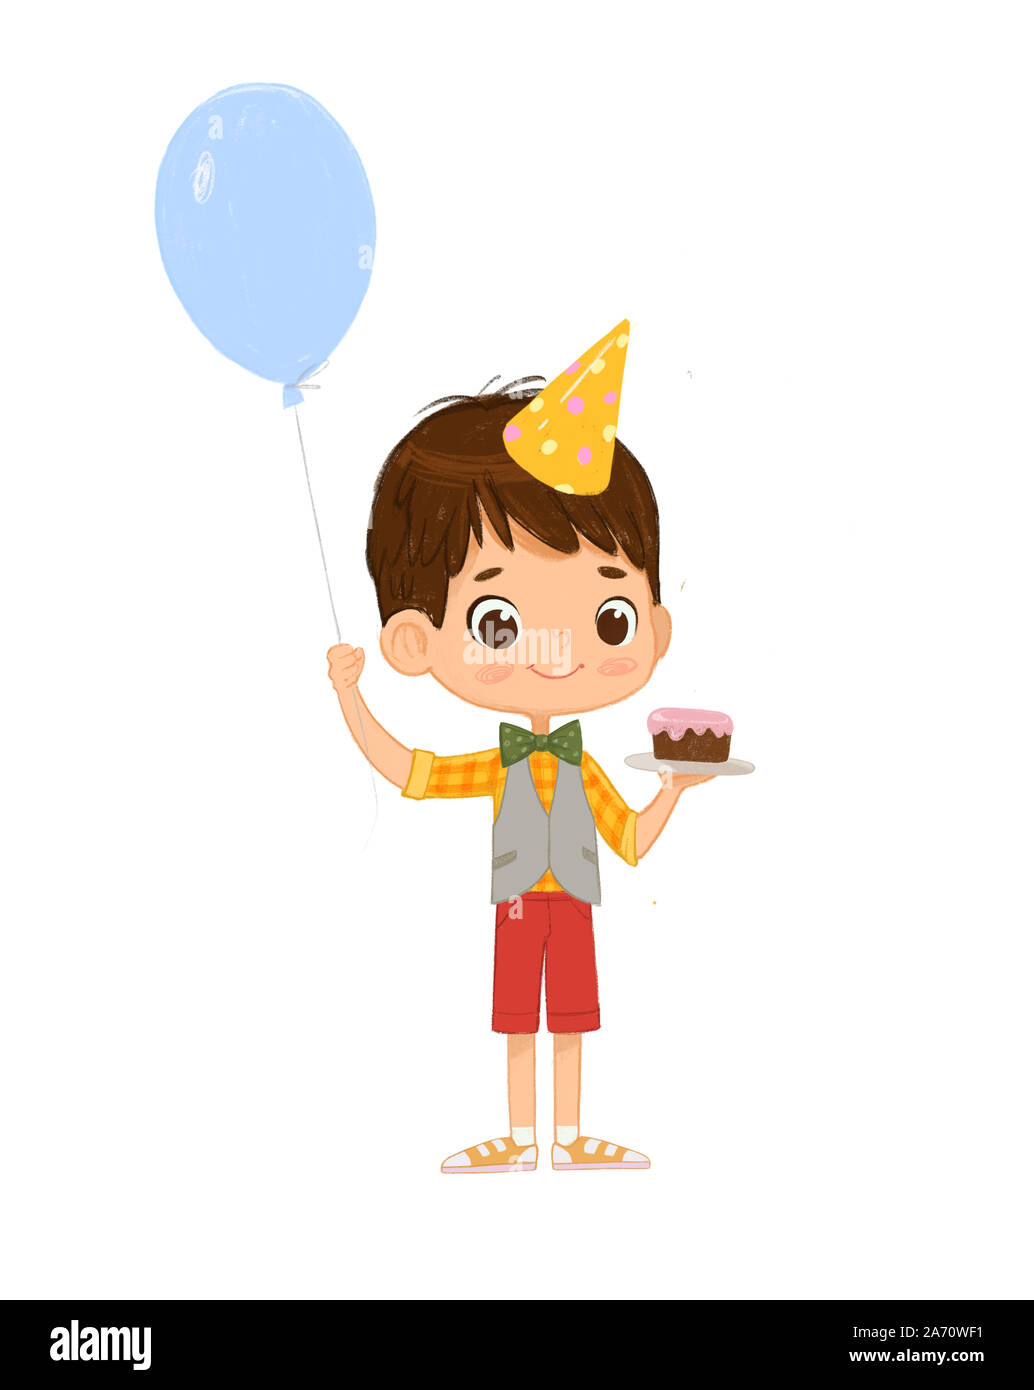 Illustrazione di una capigliatura scura ragazzo indossa compleanno Hat felicemente Jump, tenendo la torta di compleanno e il palloncino. Biglietto di auguri di compleanno invito carattere Foto Stock